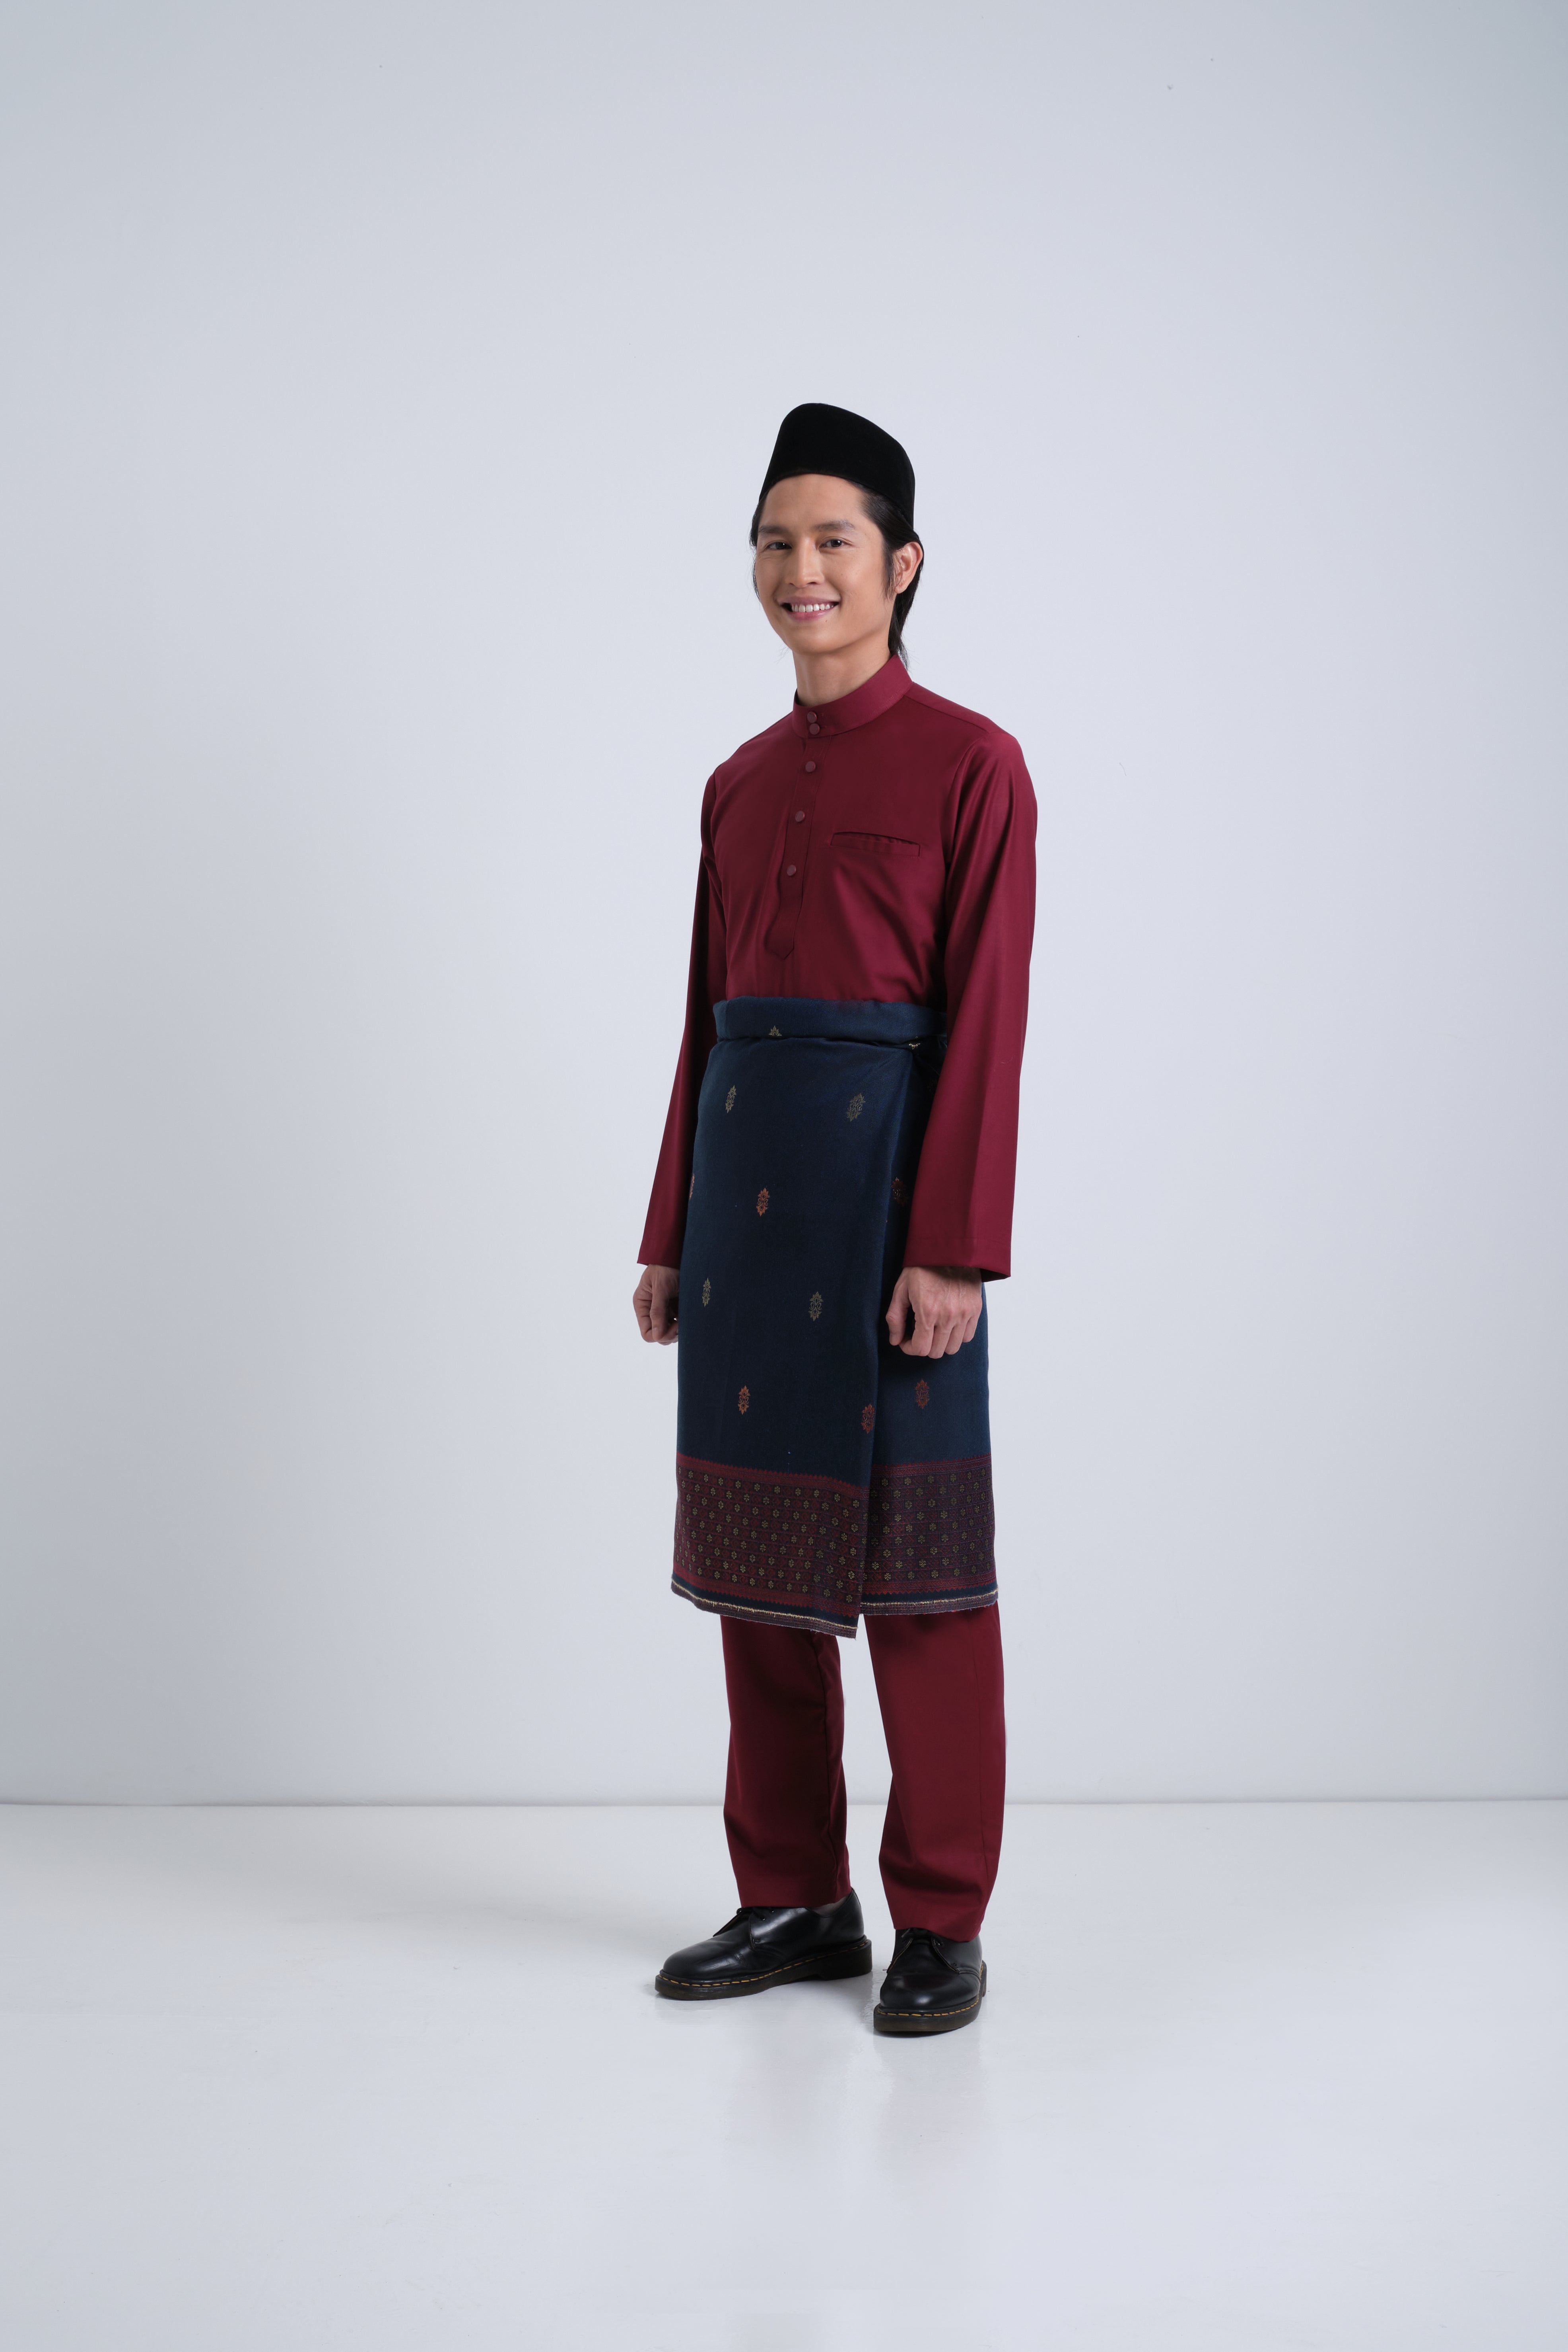 Patawali Baju Melayu Cekak Musang - Mahogany Red